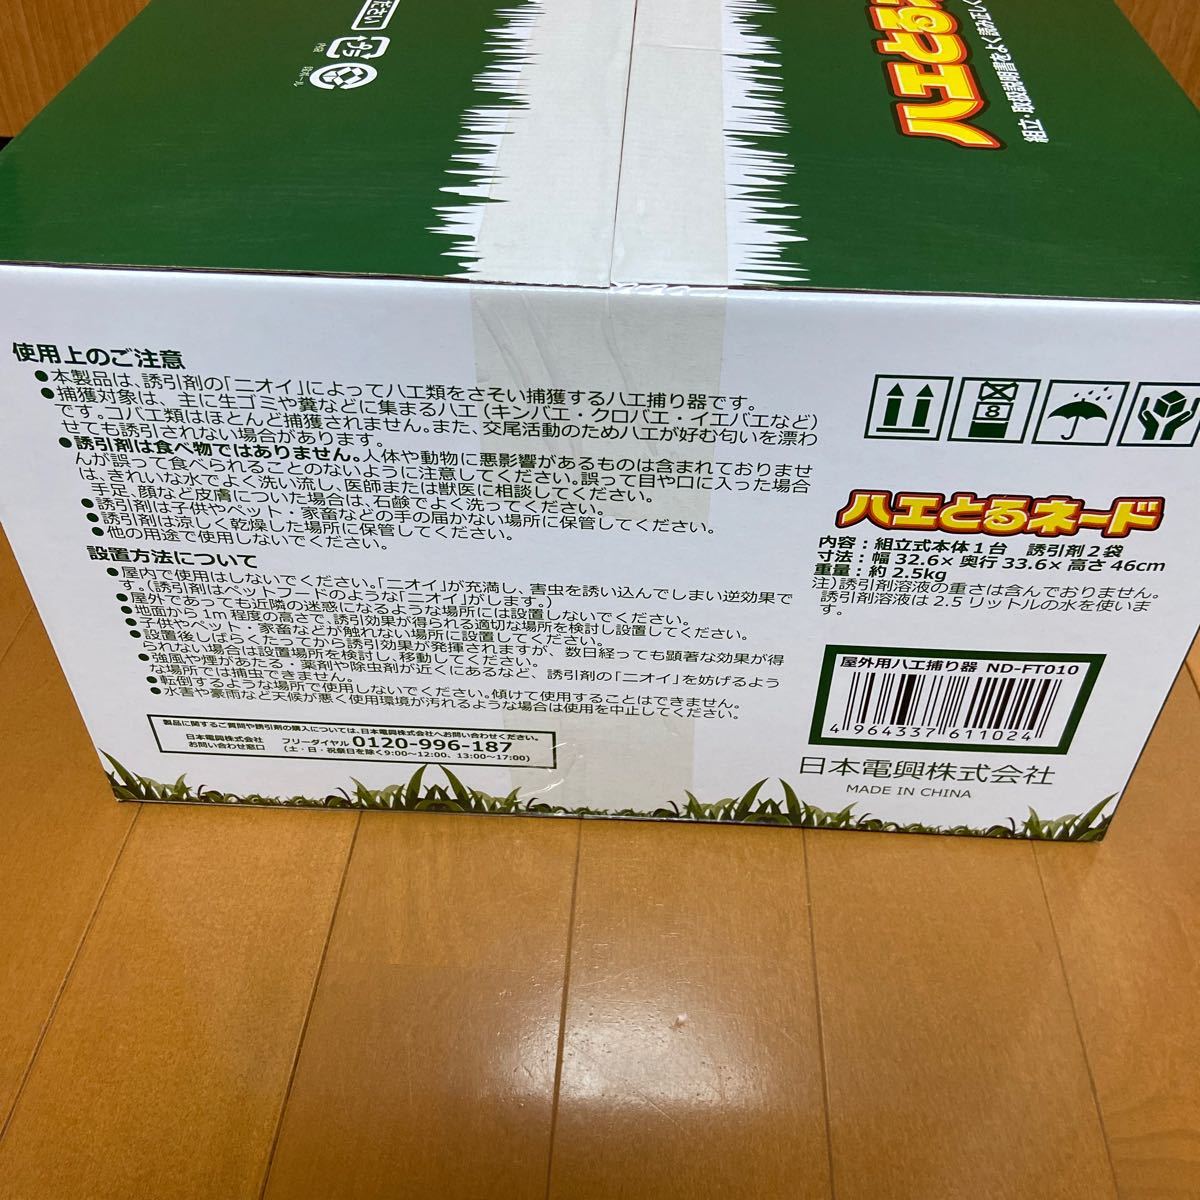 日本電興 ハエ捕獲器 ハエとるネード ND-FT010